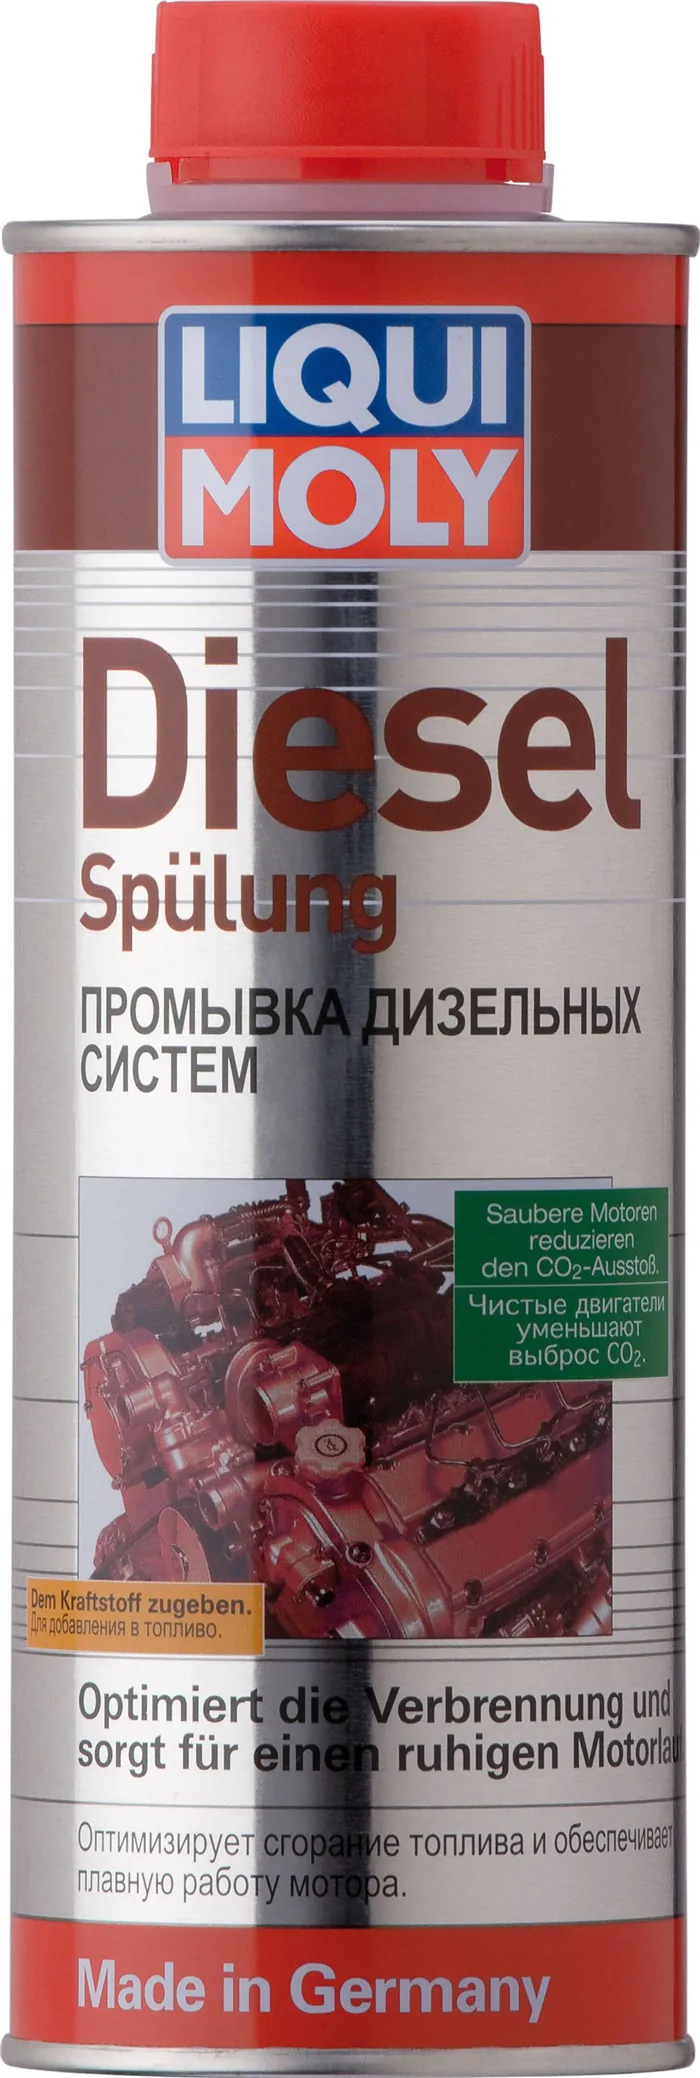 Промывка дизельных систем Diesel Spulung